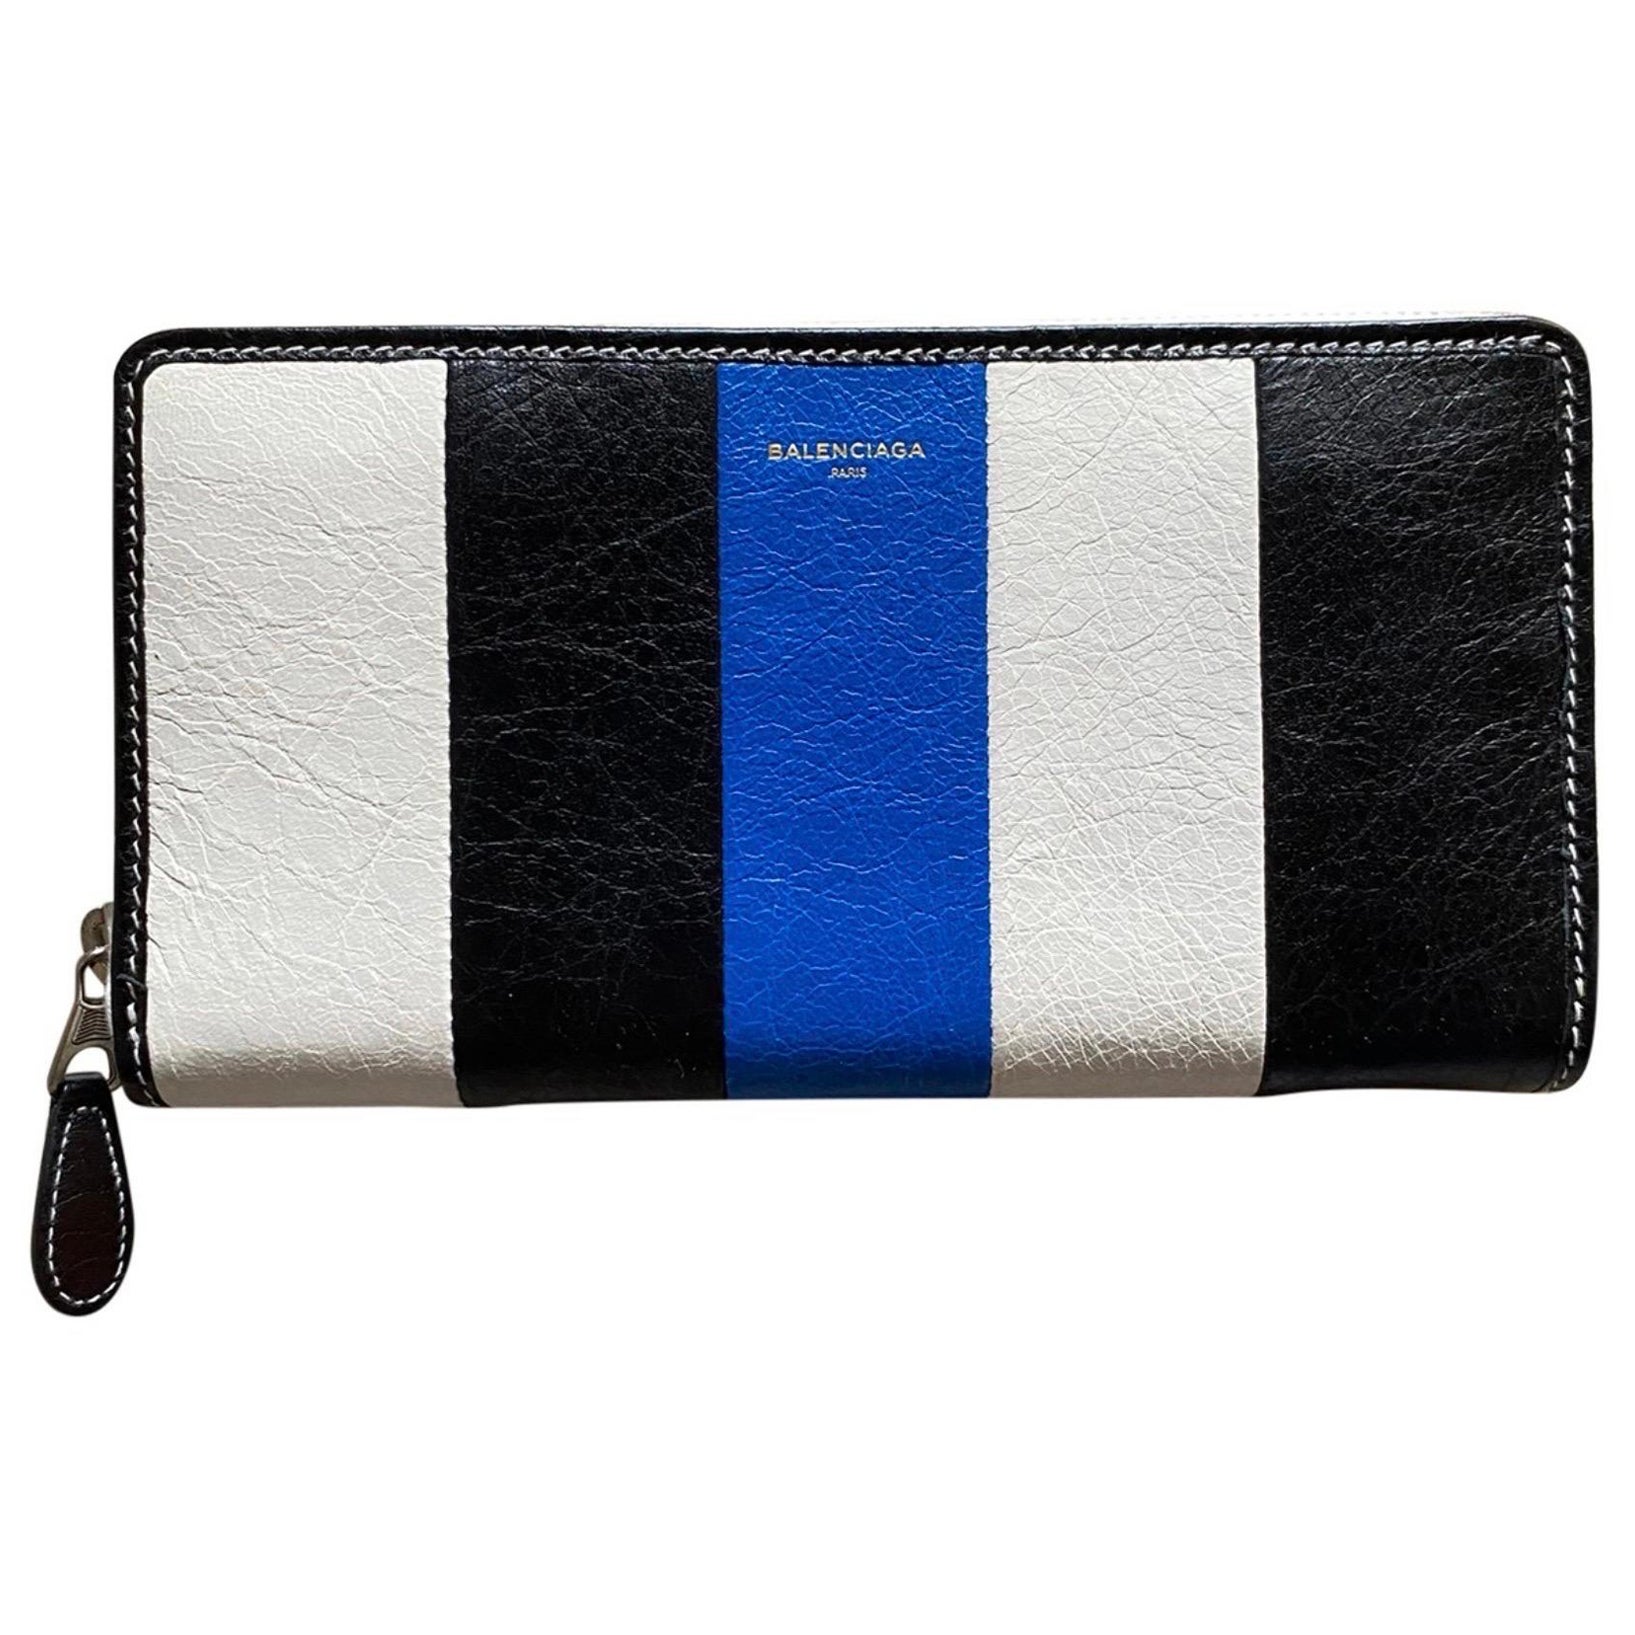 Balenciaga Fall 2016 blue stripes wallet 